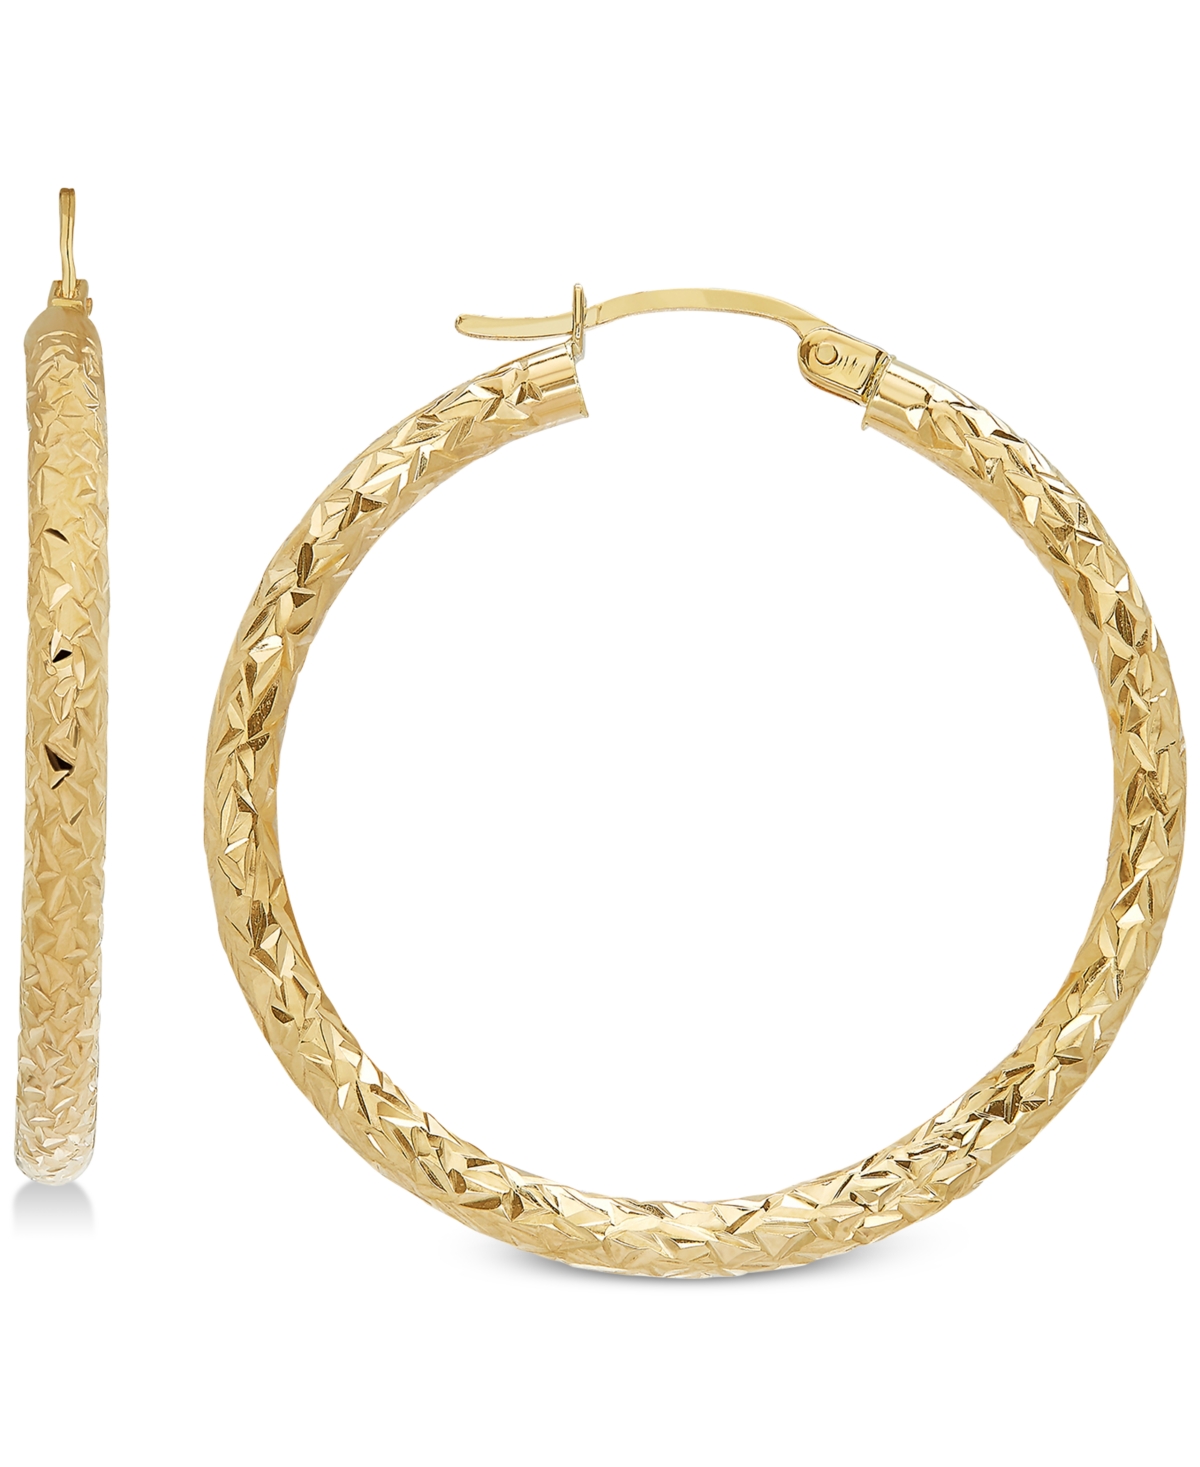 Italian Gold Textured Hoop Earrings in 14k Gold, 1 3/8 inch